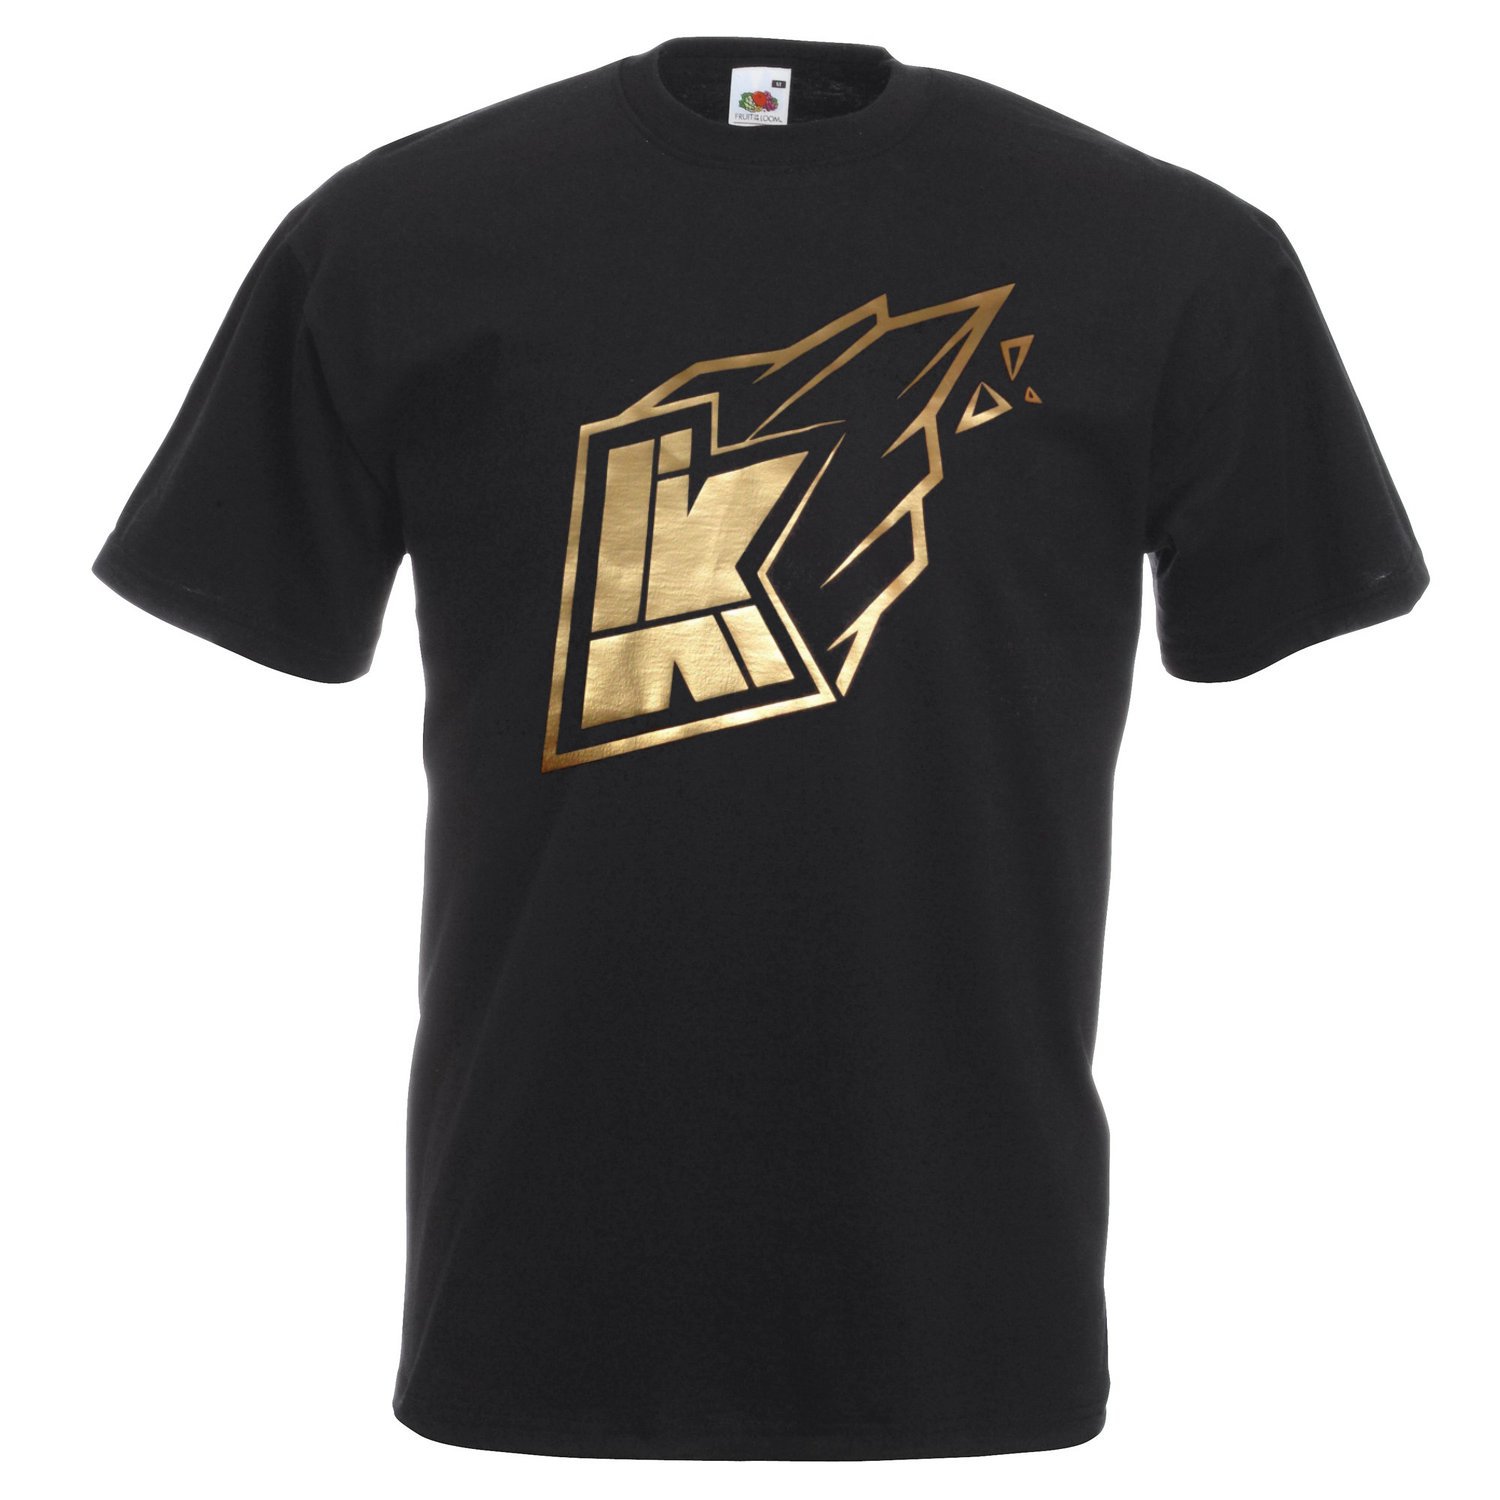 Kwebbelkop logo youtube, limited edition gold Inspired T-shirt, Men, Size M